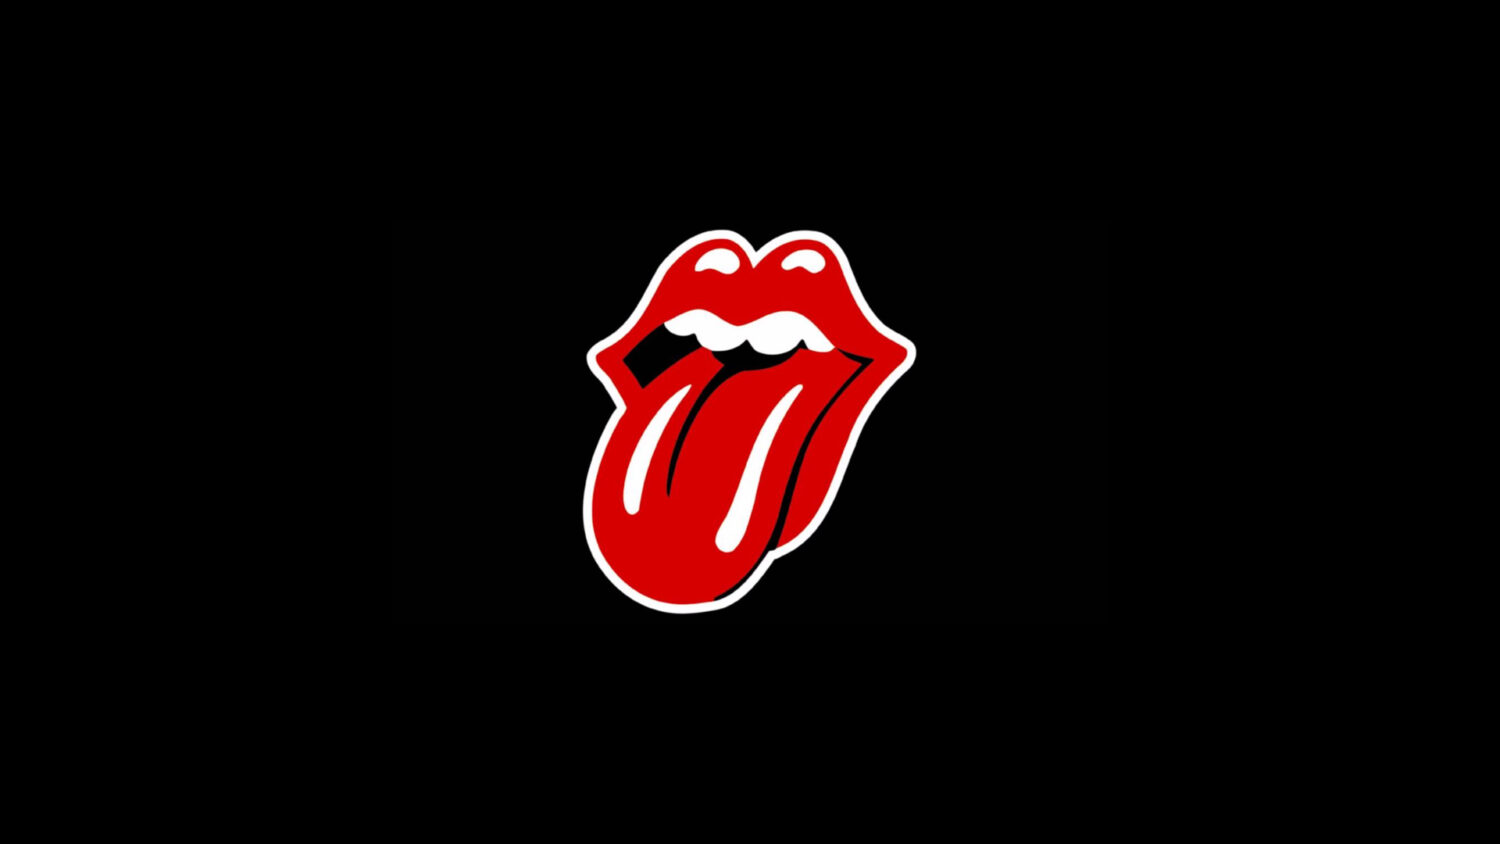 Rolling Stones: Αλλάζει η διάσημη «κόκκινη γλώσσα» στο λογότυπο τους